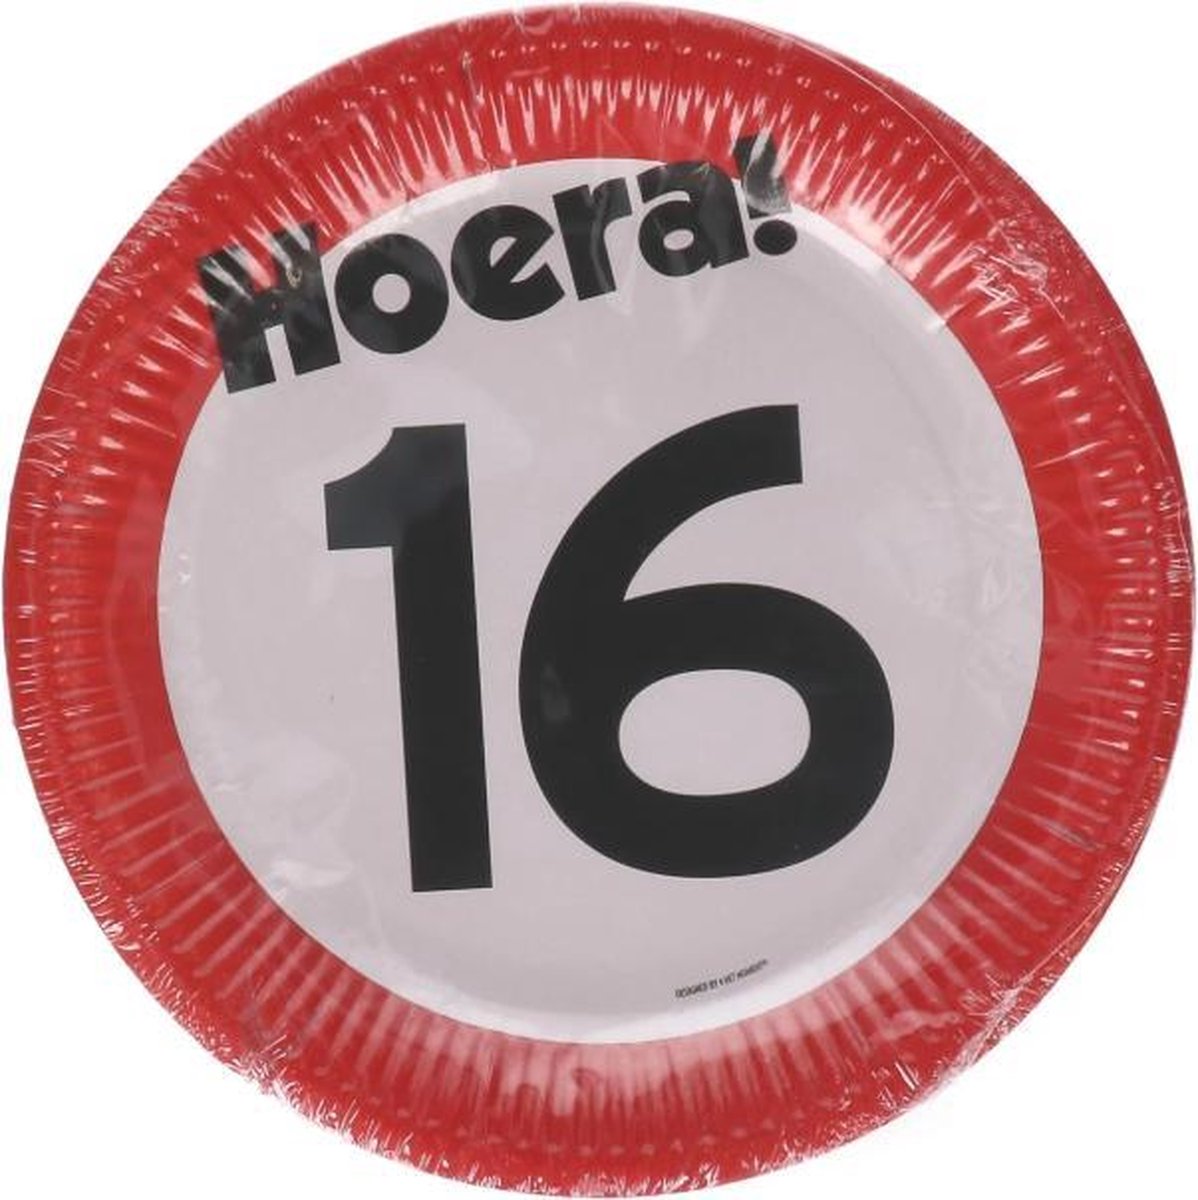 Kartonnen Bordjes hoera 16 jaar 23cm 8 st - Wegwerp borden - Feest/verjaardag/BBQ borden